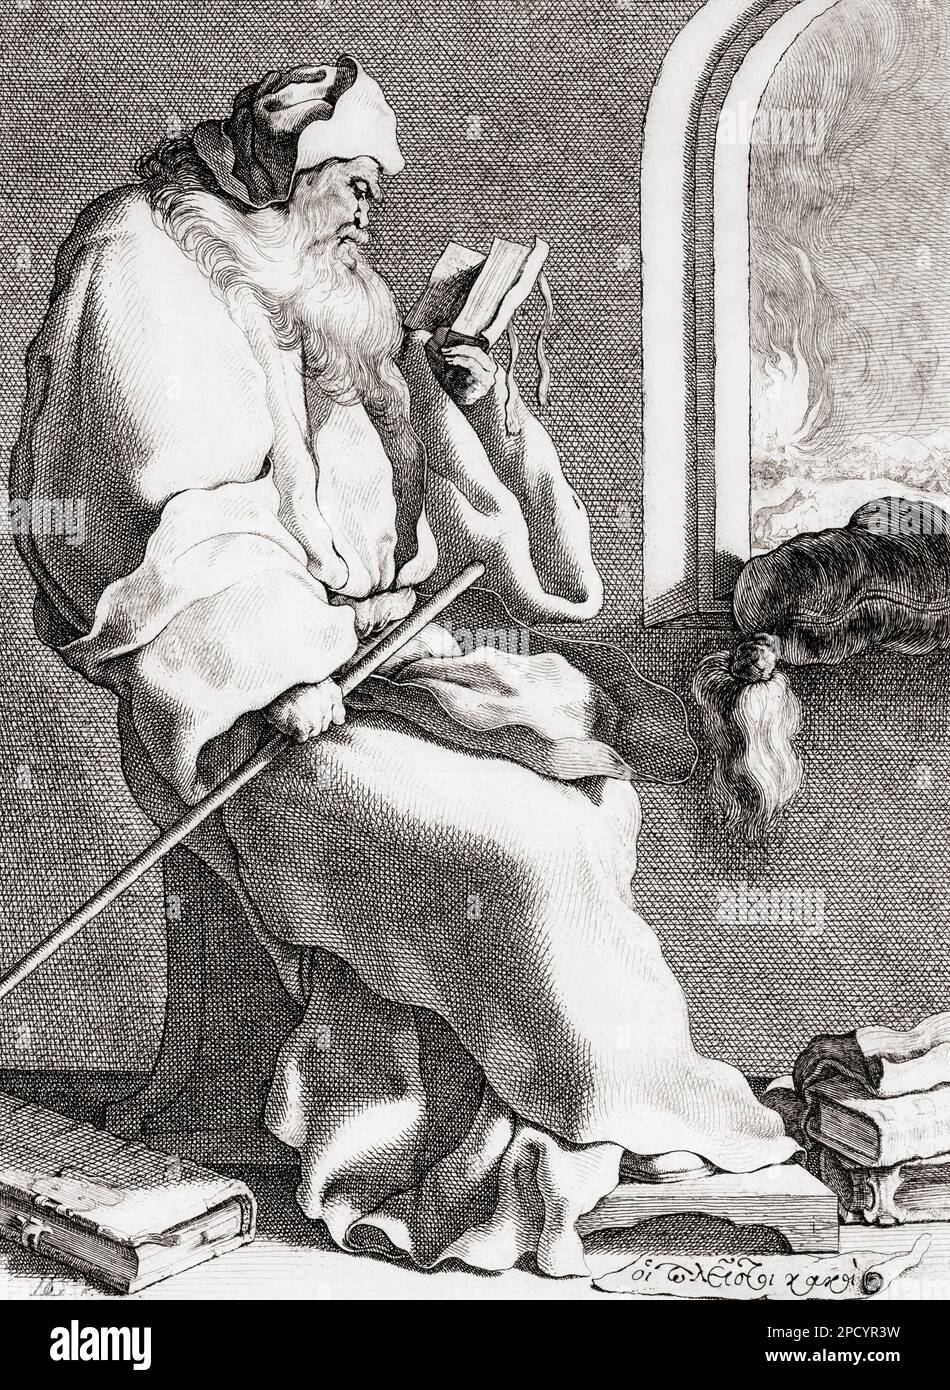 Voreingenommenheit von Priene, fl. 6. Jahrhundert v. Chr. Einer der sieben Weisen Griechenlands, berühmt für seine Integrität. Nach einer Arbeit von Jacques de Gheyn. Stockfoto